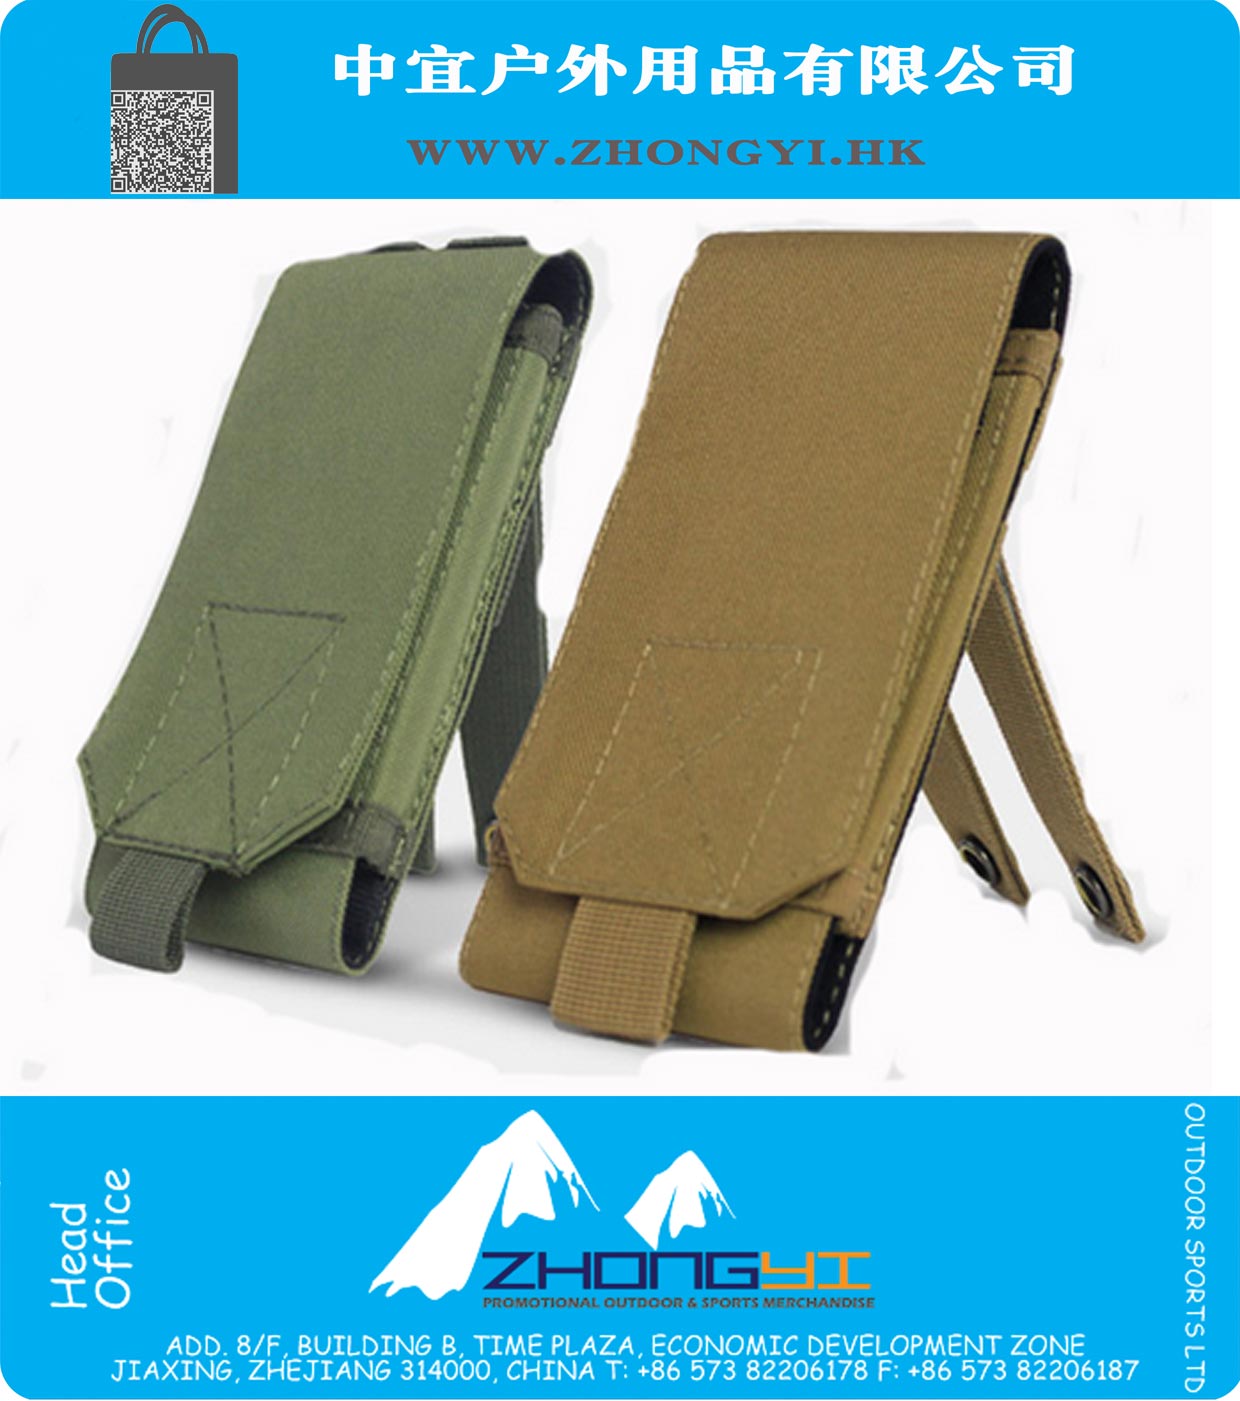 Outdoor-Camping-Jagd Taschen Tactical Molle Handy iPhone Smartphone Nylon Schnalle Taille Beutel Überleben Werkzeuge Tasche